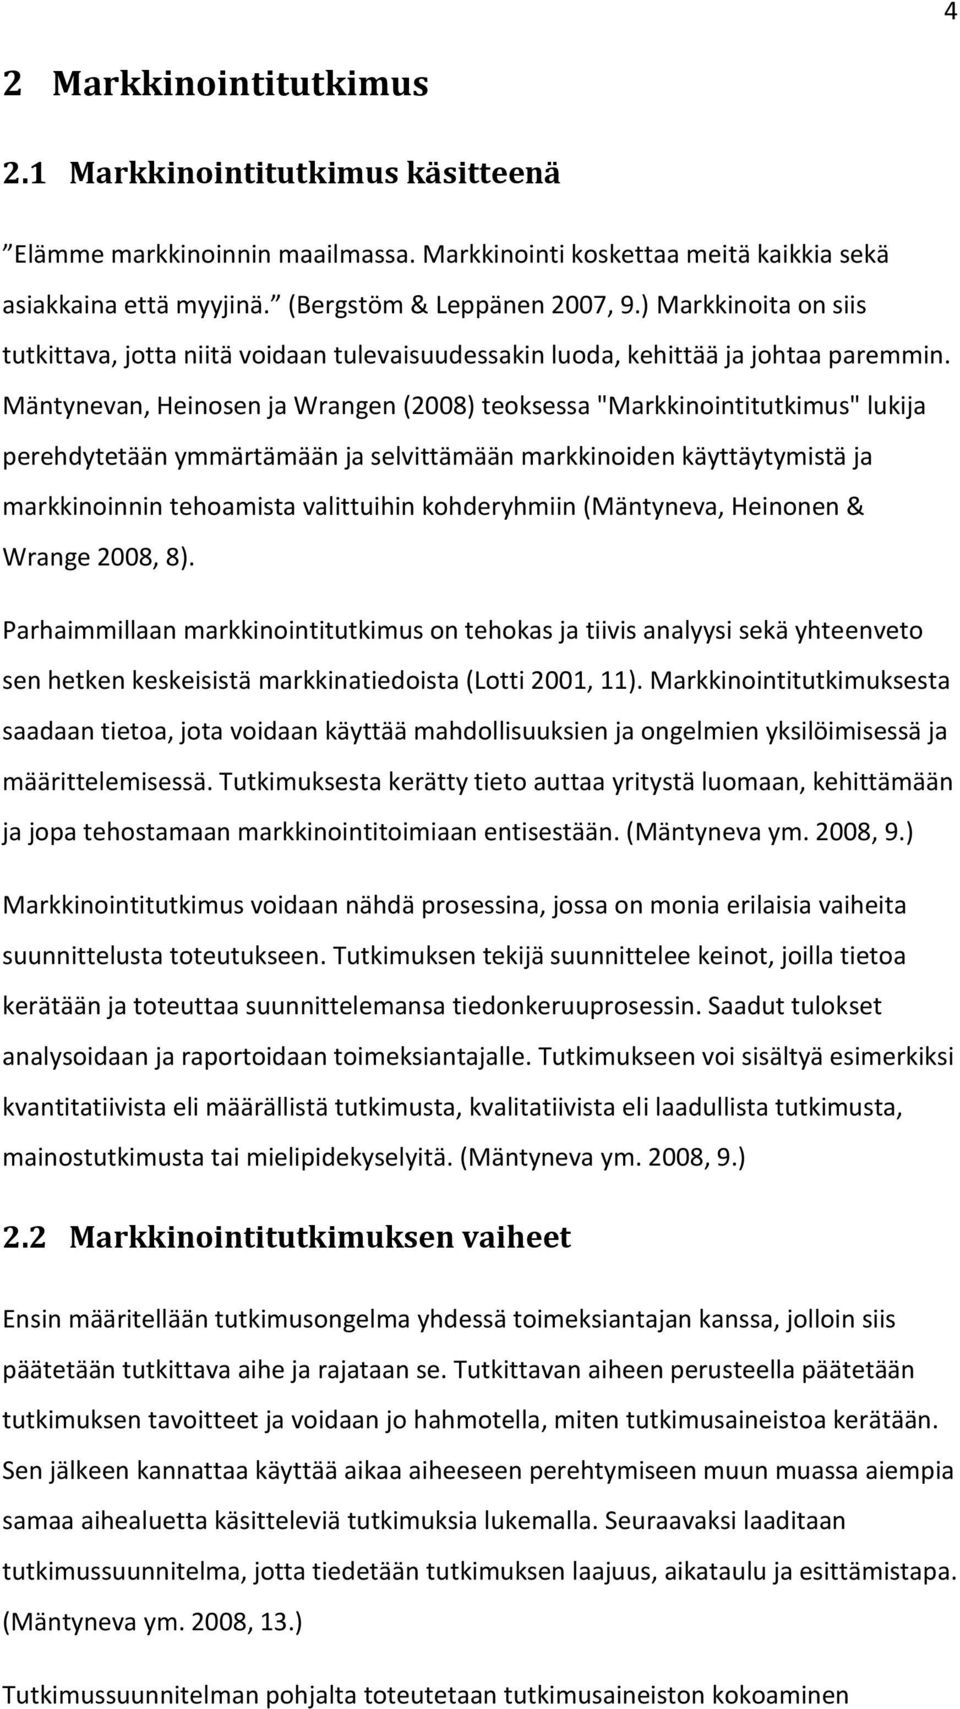 Mäntynevan, Heinsen ja Wrangen (2008) teksessa "Markkinintitutkimus" lukija perehdytetään ymmärtämään ja selvittämään markkiniden käyttäytymistä ja markkininnin tehamista valittuihin khderyhmiin